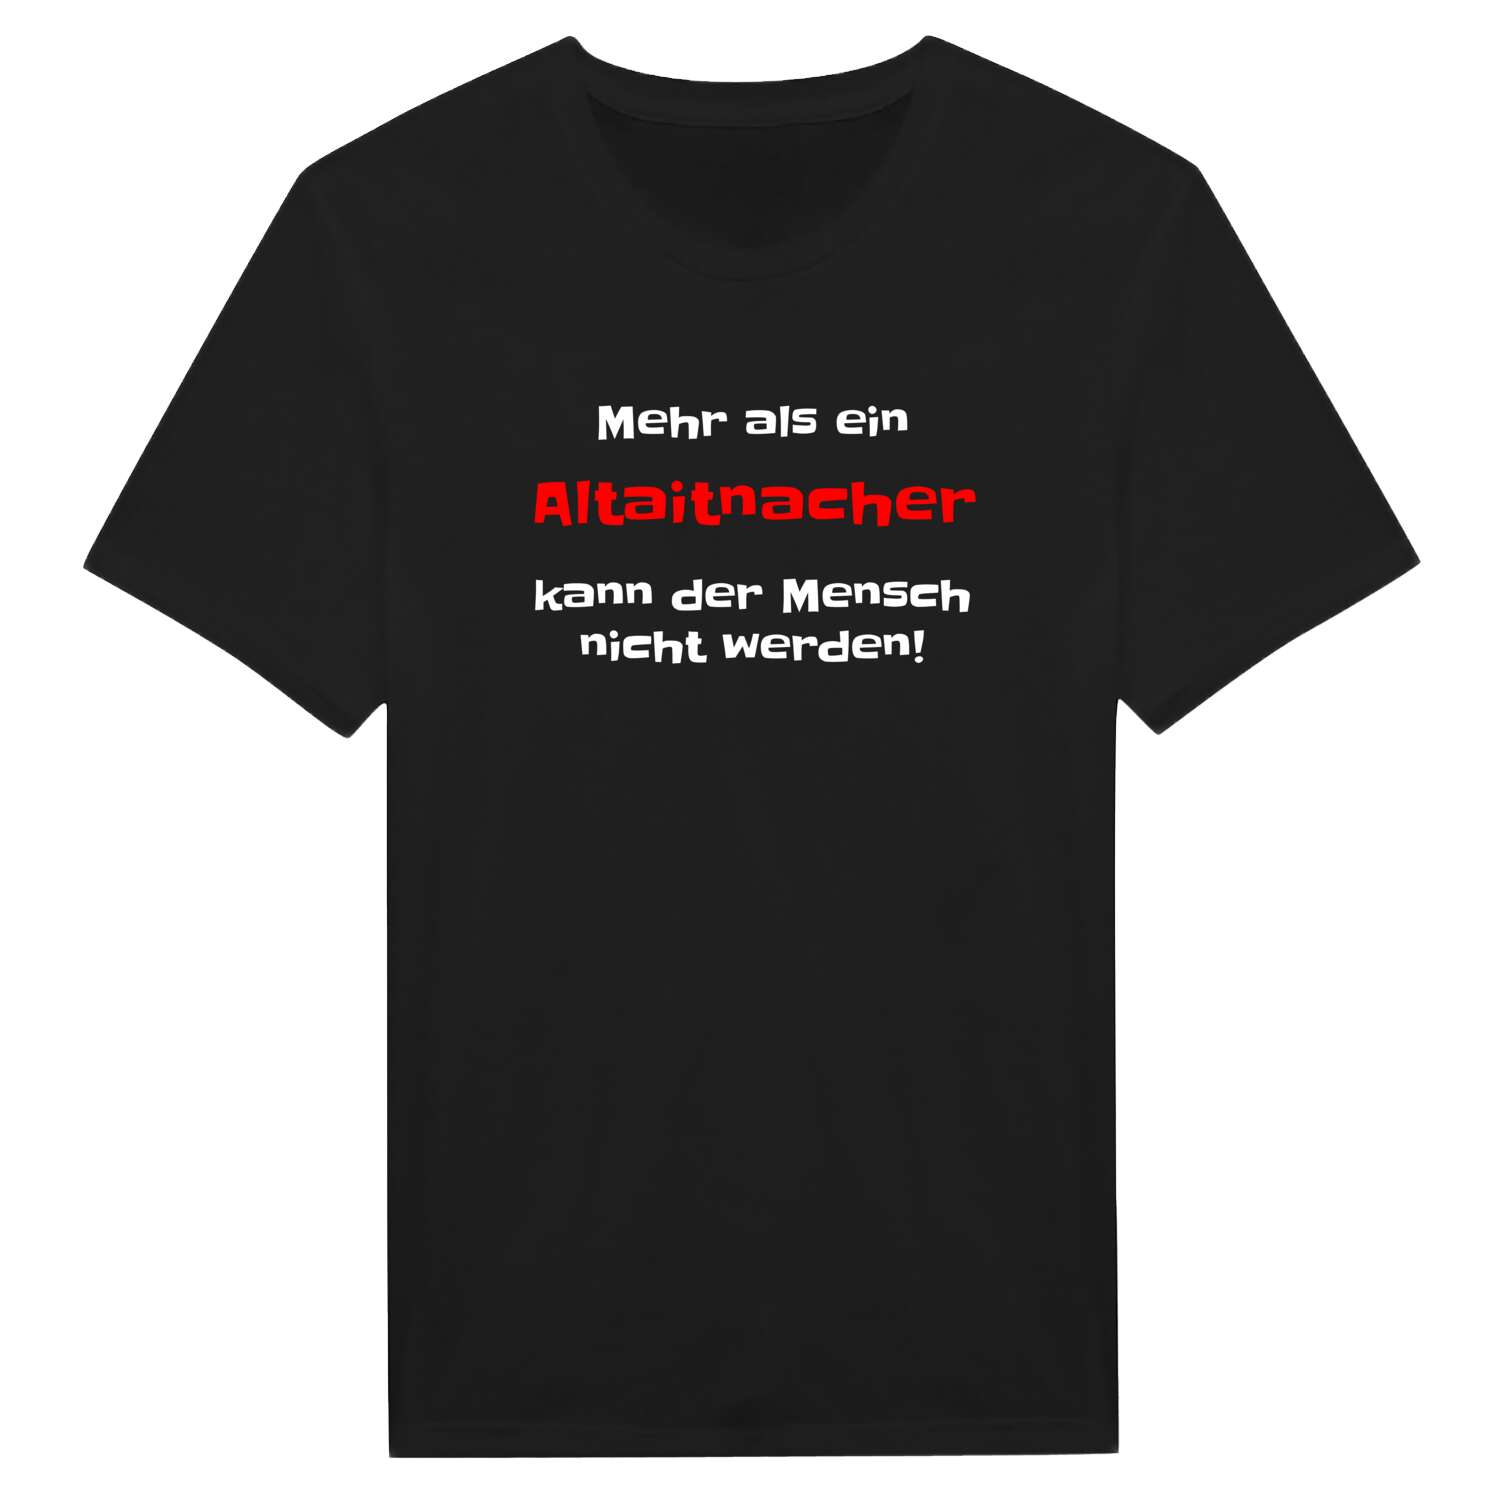 Altaitnach T-Shirt »Mehr als ein«